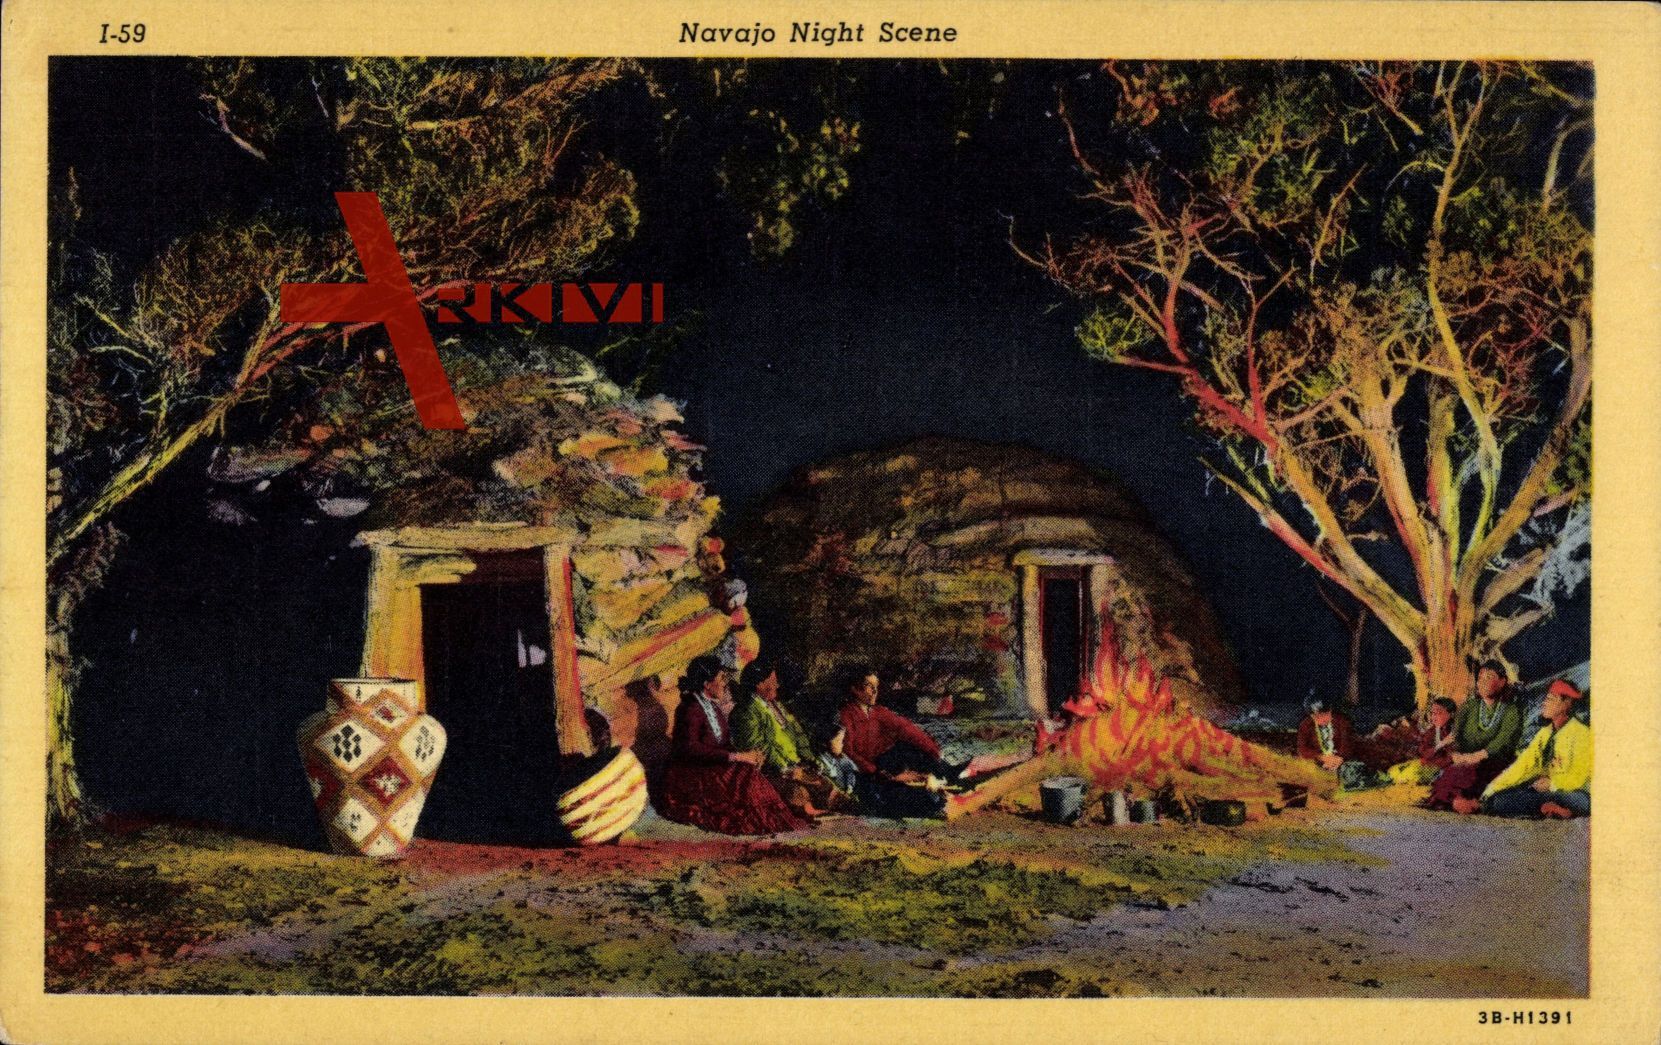 Navajo Night Scene, Indianer sitzten zusammen am Lagerfeuer